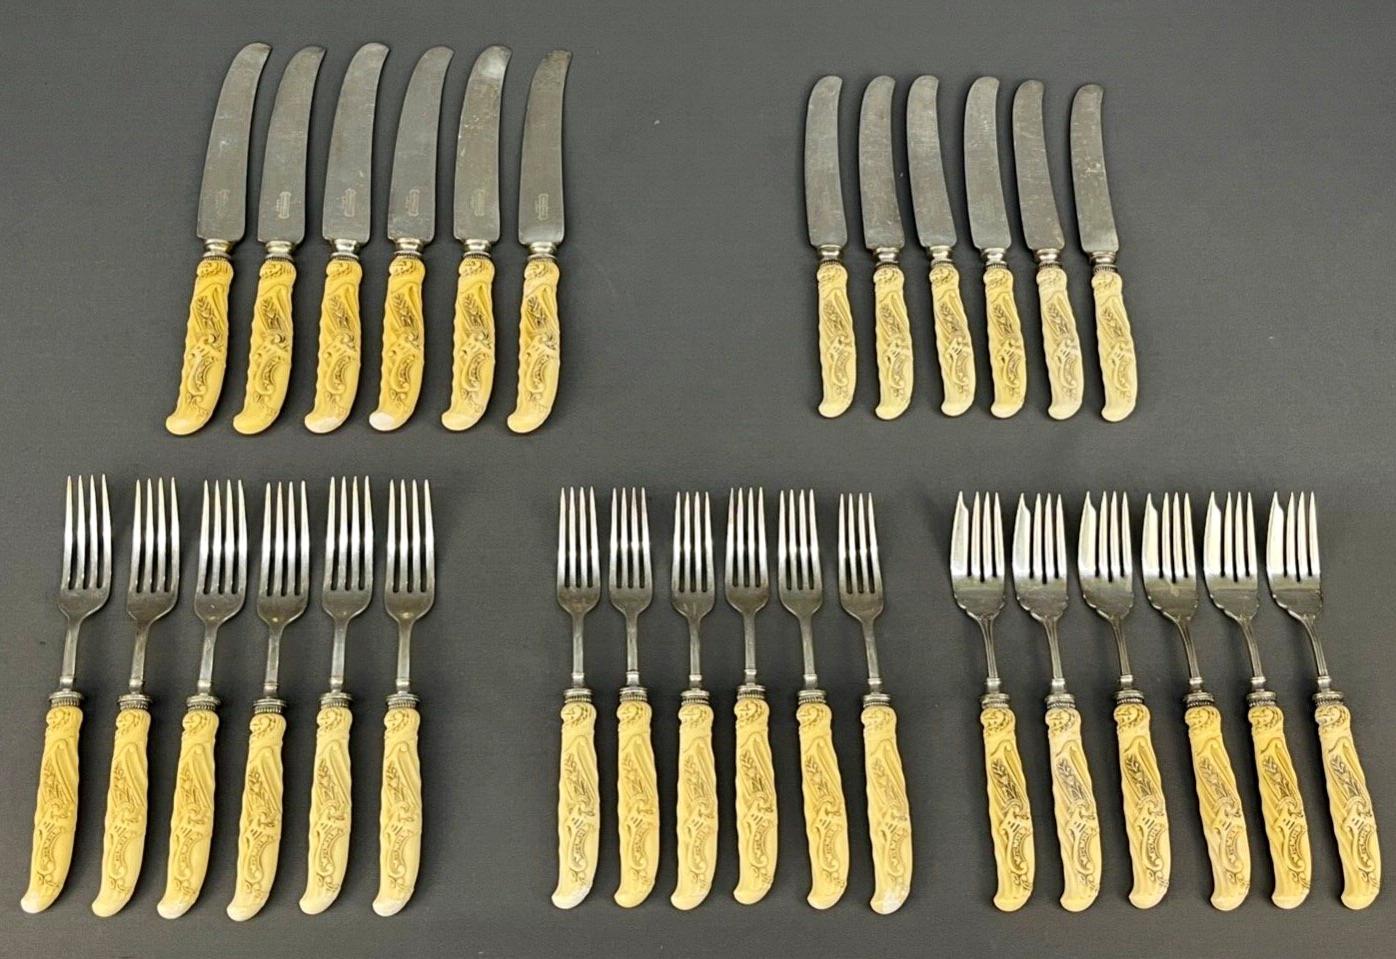 Du fabricant Landers, Frary & Clark, un ensemble de 30 couteaux et fourchettes de table avec des manches en celluloïd sculpté, de couleur ivoire, vers 1900-1920.

Landers, Frary & Clark était une entreprise d'articles ménagers fondée en 1862 et